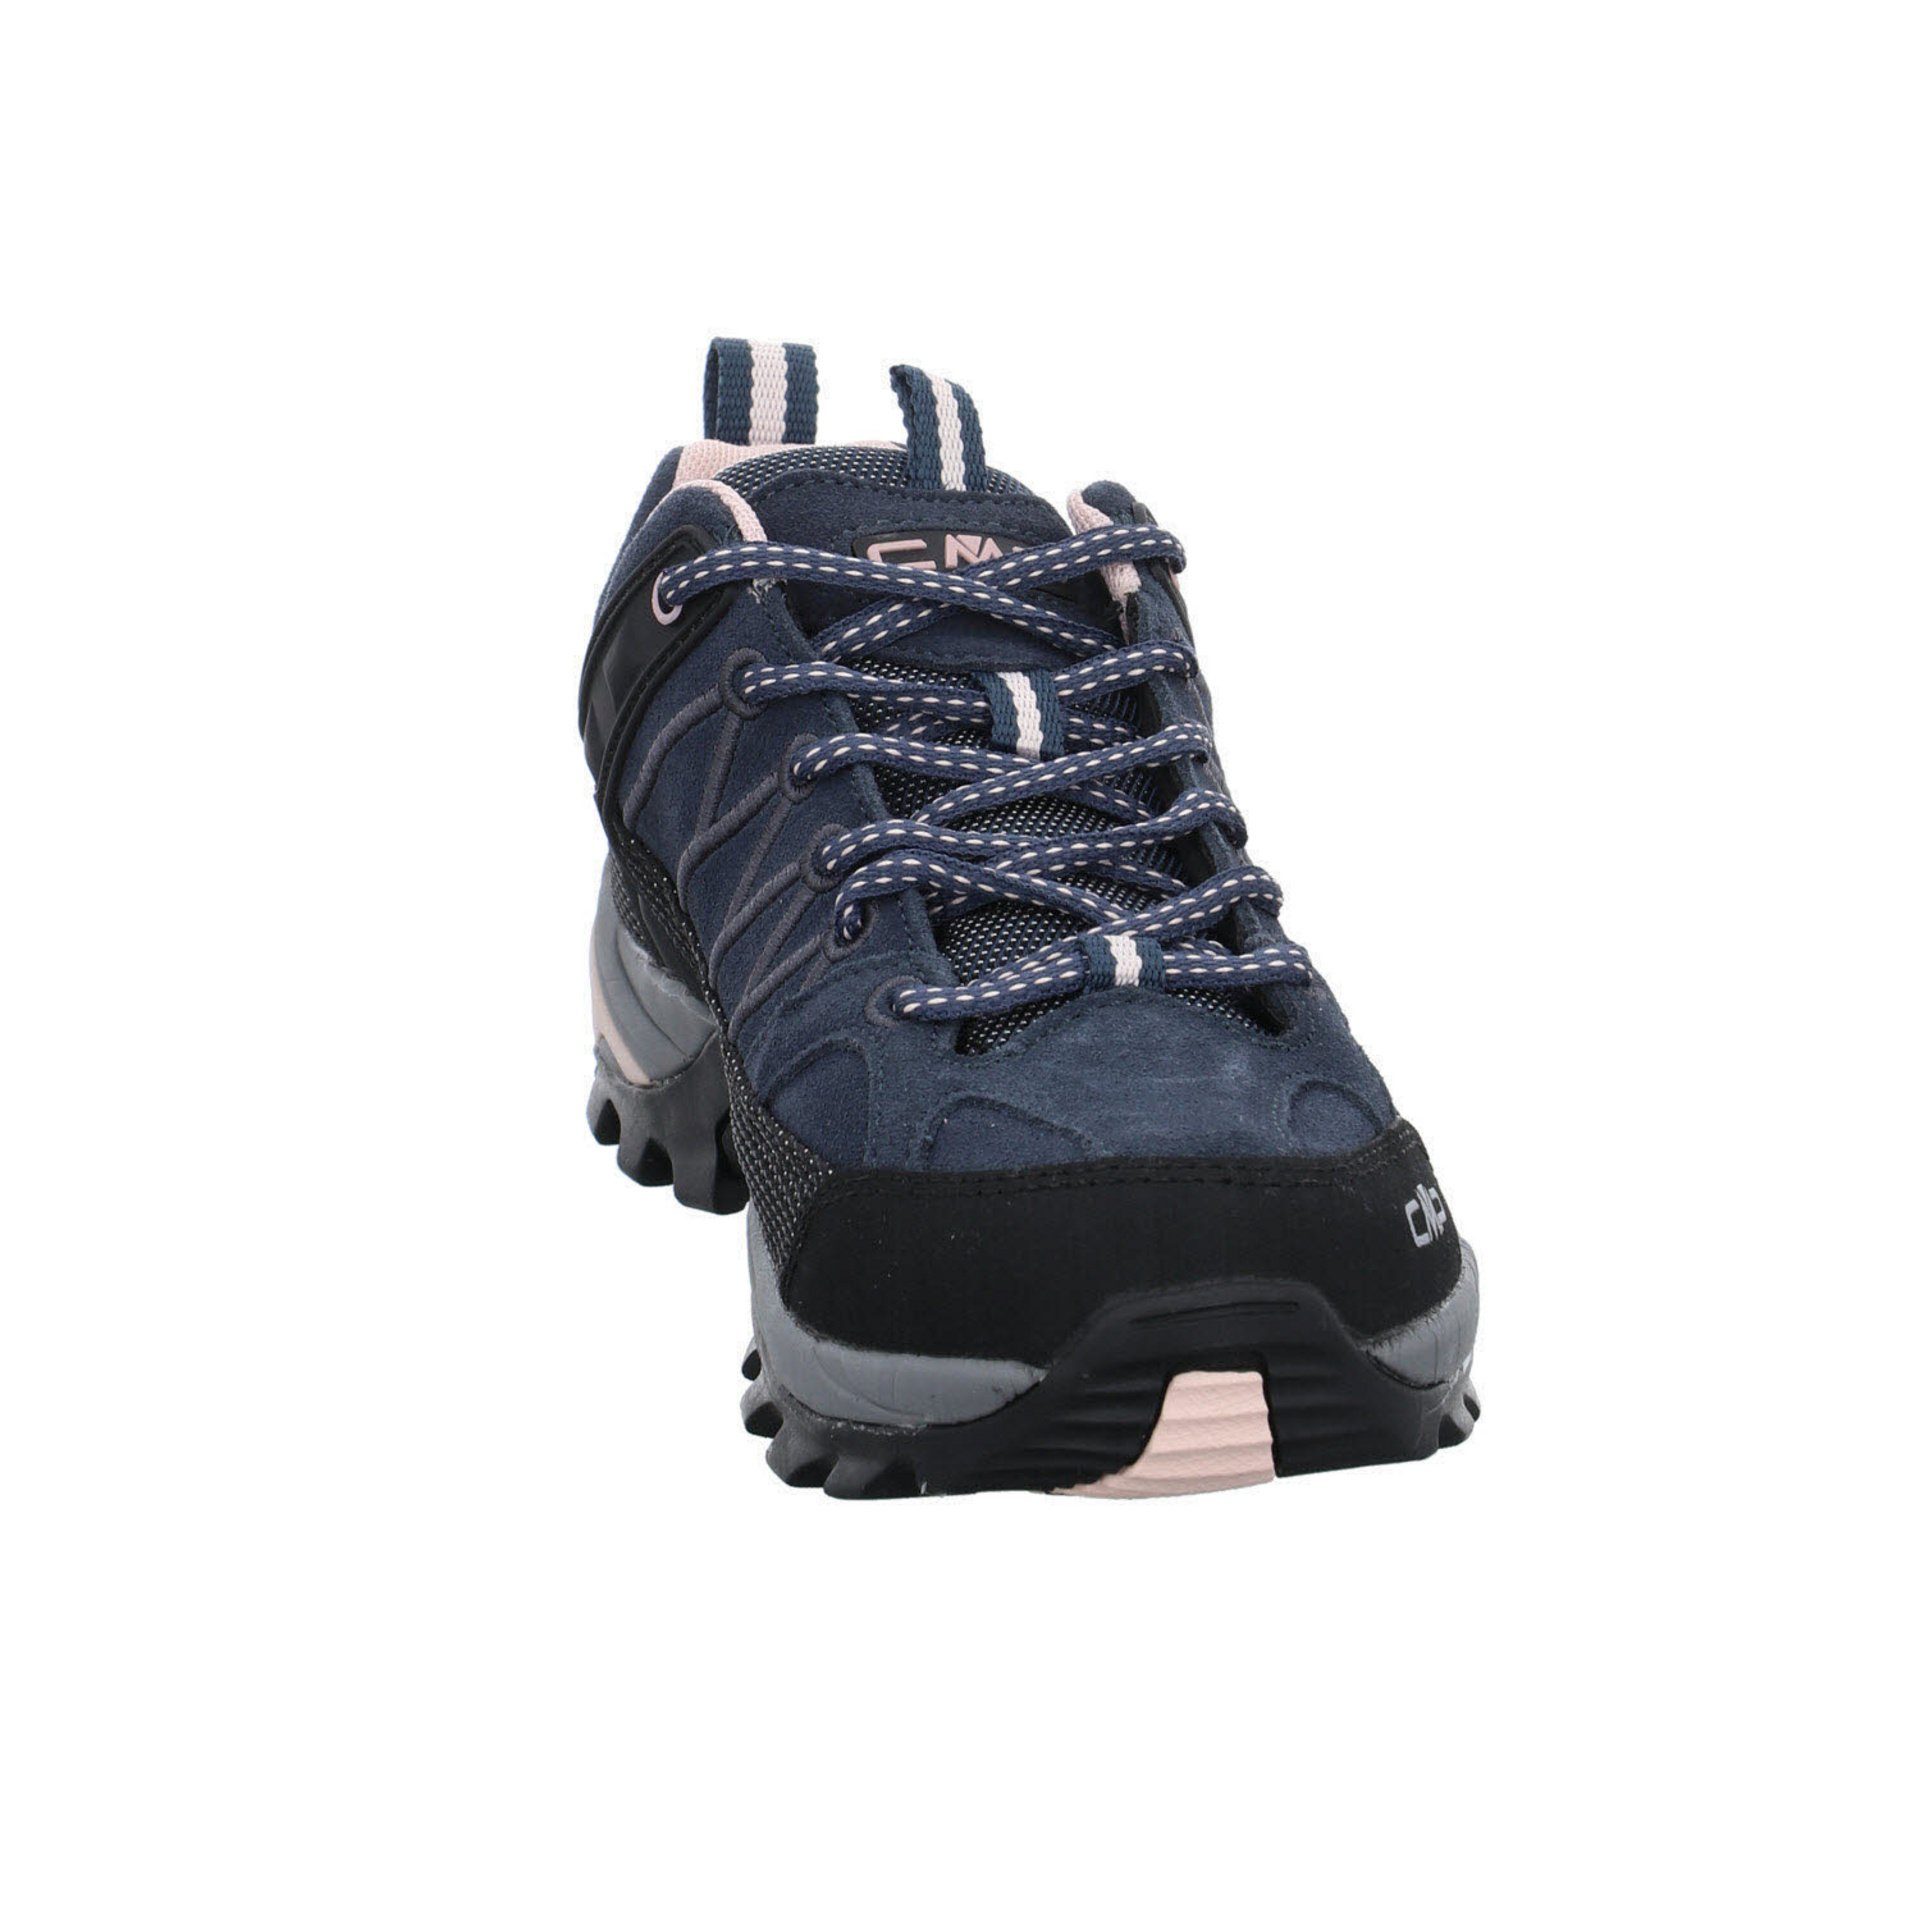 Low CMP anthrazit (201) Outdoorschuh Riegel Outdoorschuh Leder-/Textilkombination Outdoor Damen Schuhe